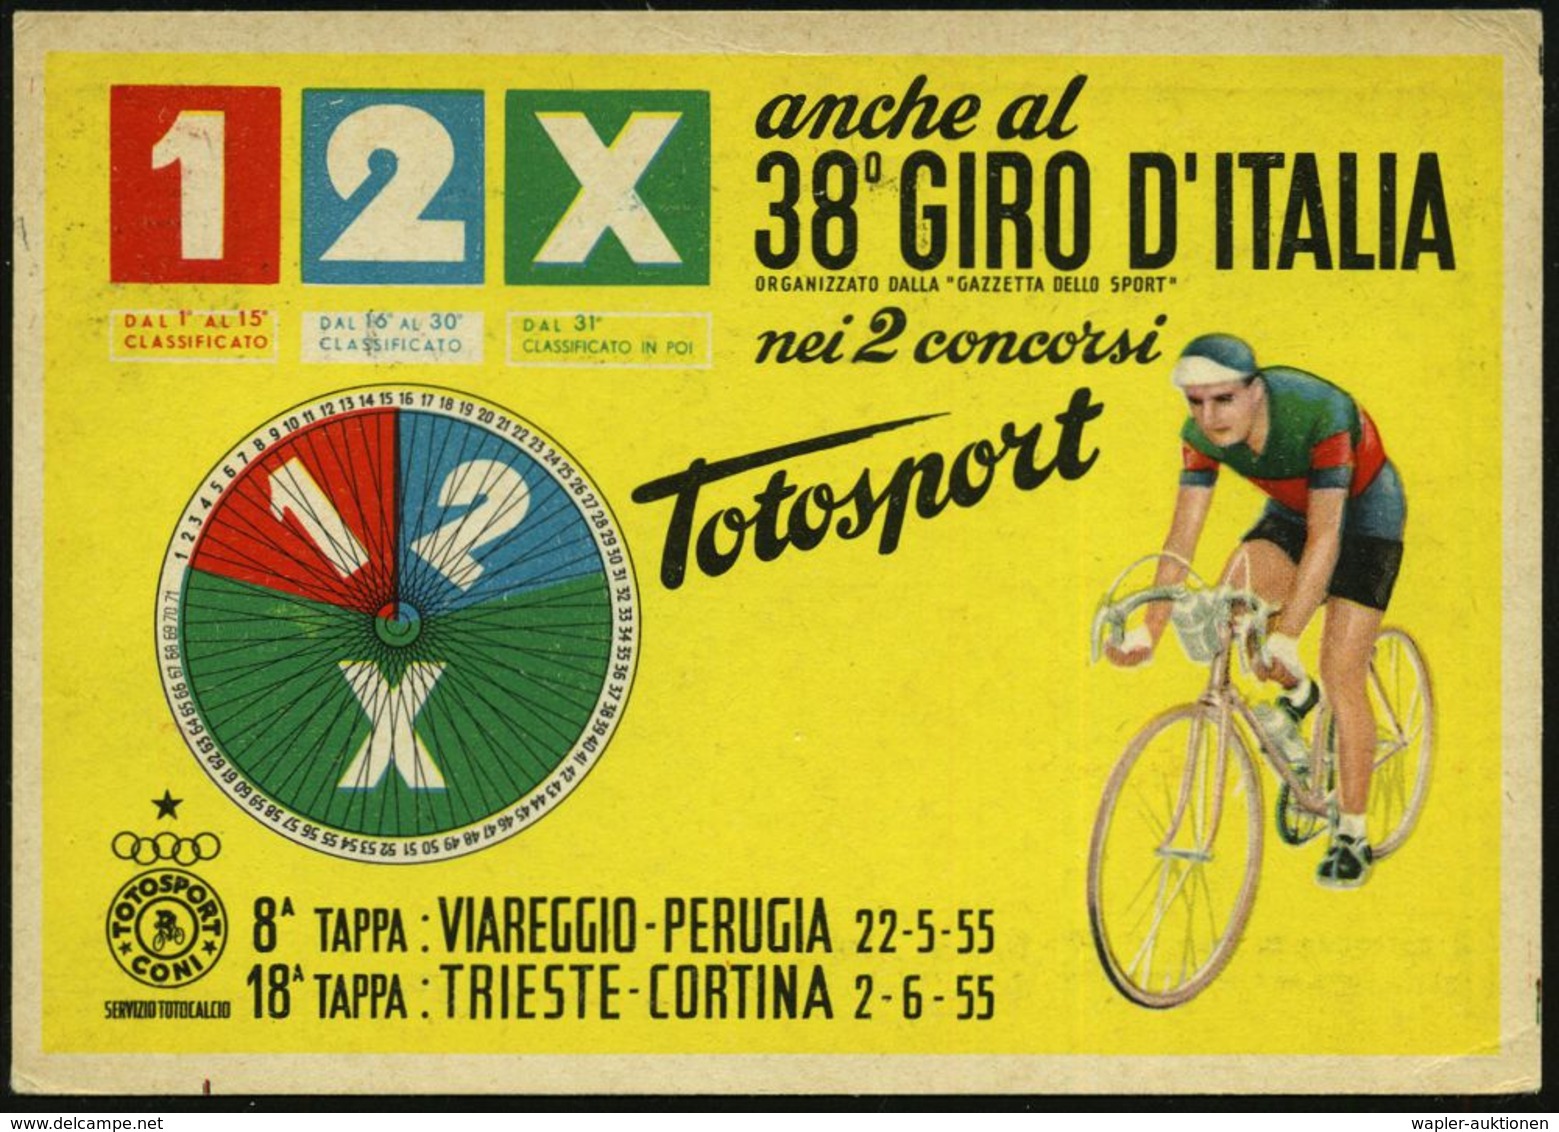 ITALIEN 1955 (15.5.) MWSt.: AUTO AMBUL. P.T. 38° GIRO D'ITALIA/38° GIRO CICLISTICO D'ITALIA/..GAZZETTA DELLO SPORT/2a ET - Wielrennen